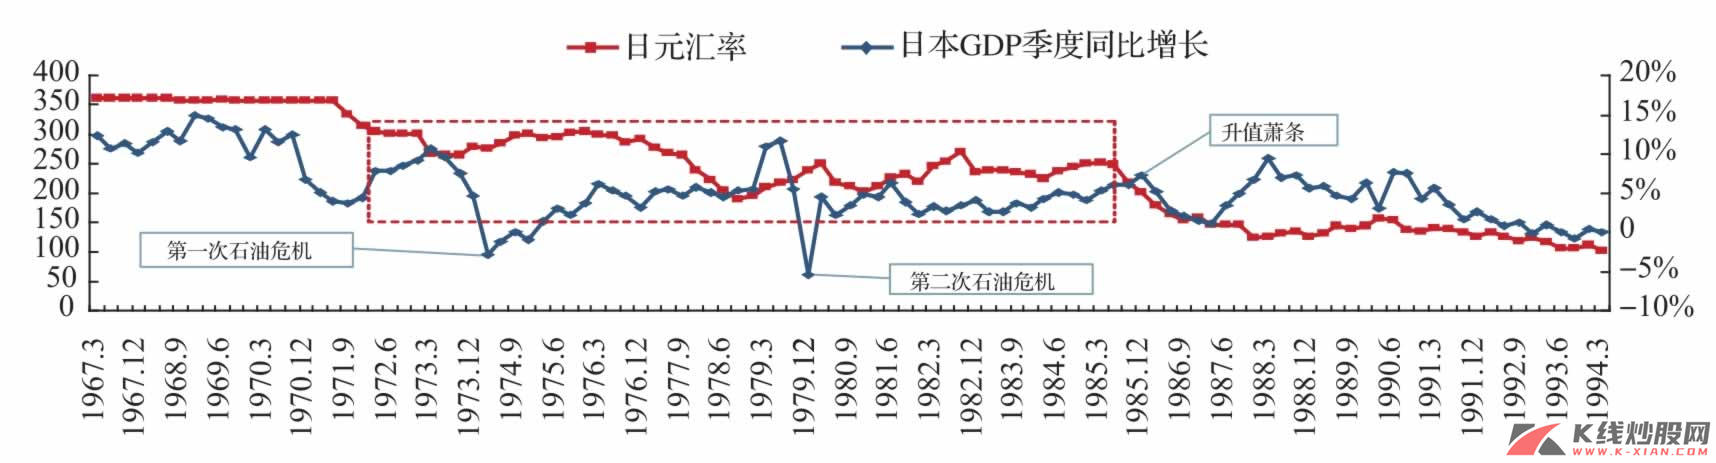 日元升值与日本经济增长